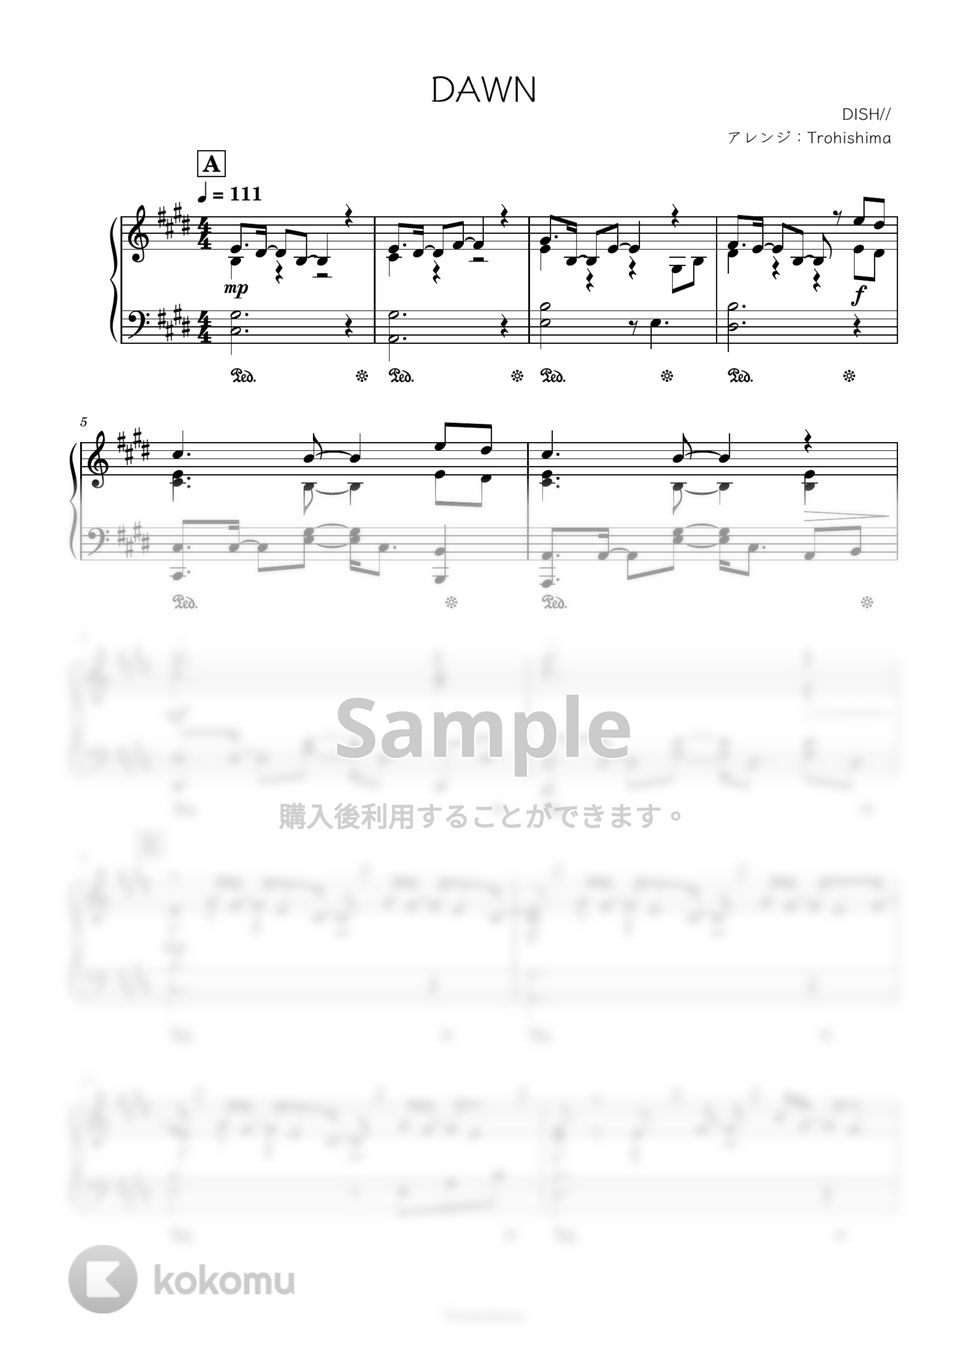 DISH// - DAWN (「SAMURAI BLUE 新しい景色を2022」公式テーマソング) by Trohishima